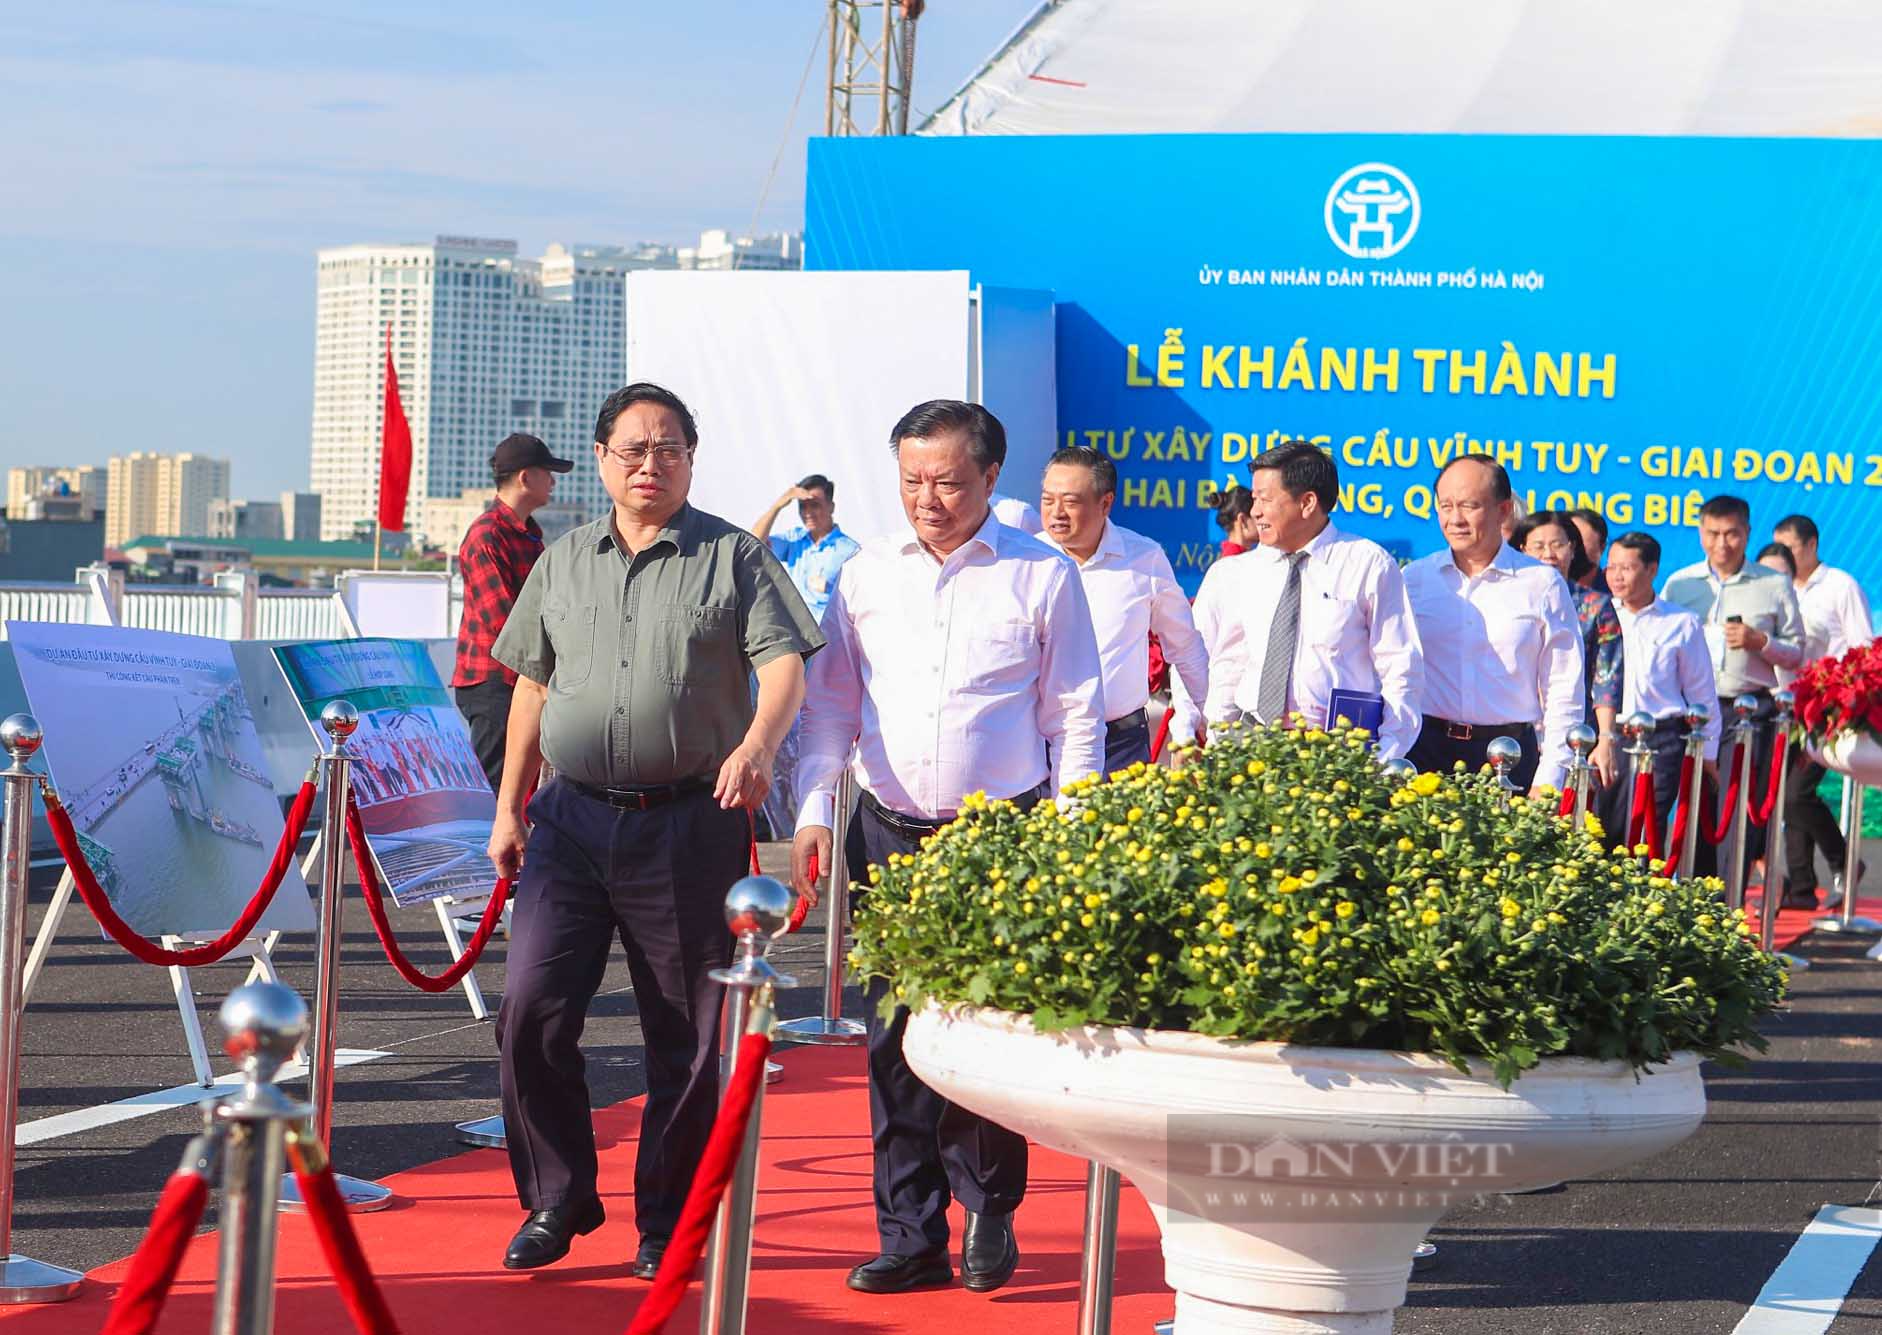 Thủ tướng Chính phủ Phạm Minh Chính tới dự lễ khánh thành cầu Vĩnh Tuy giai đoạn 2 - Ảnh 2.